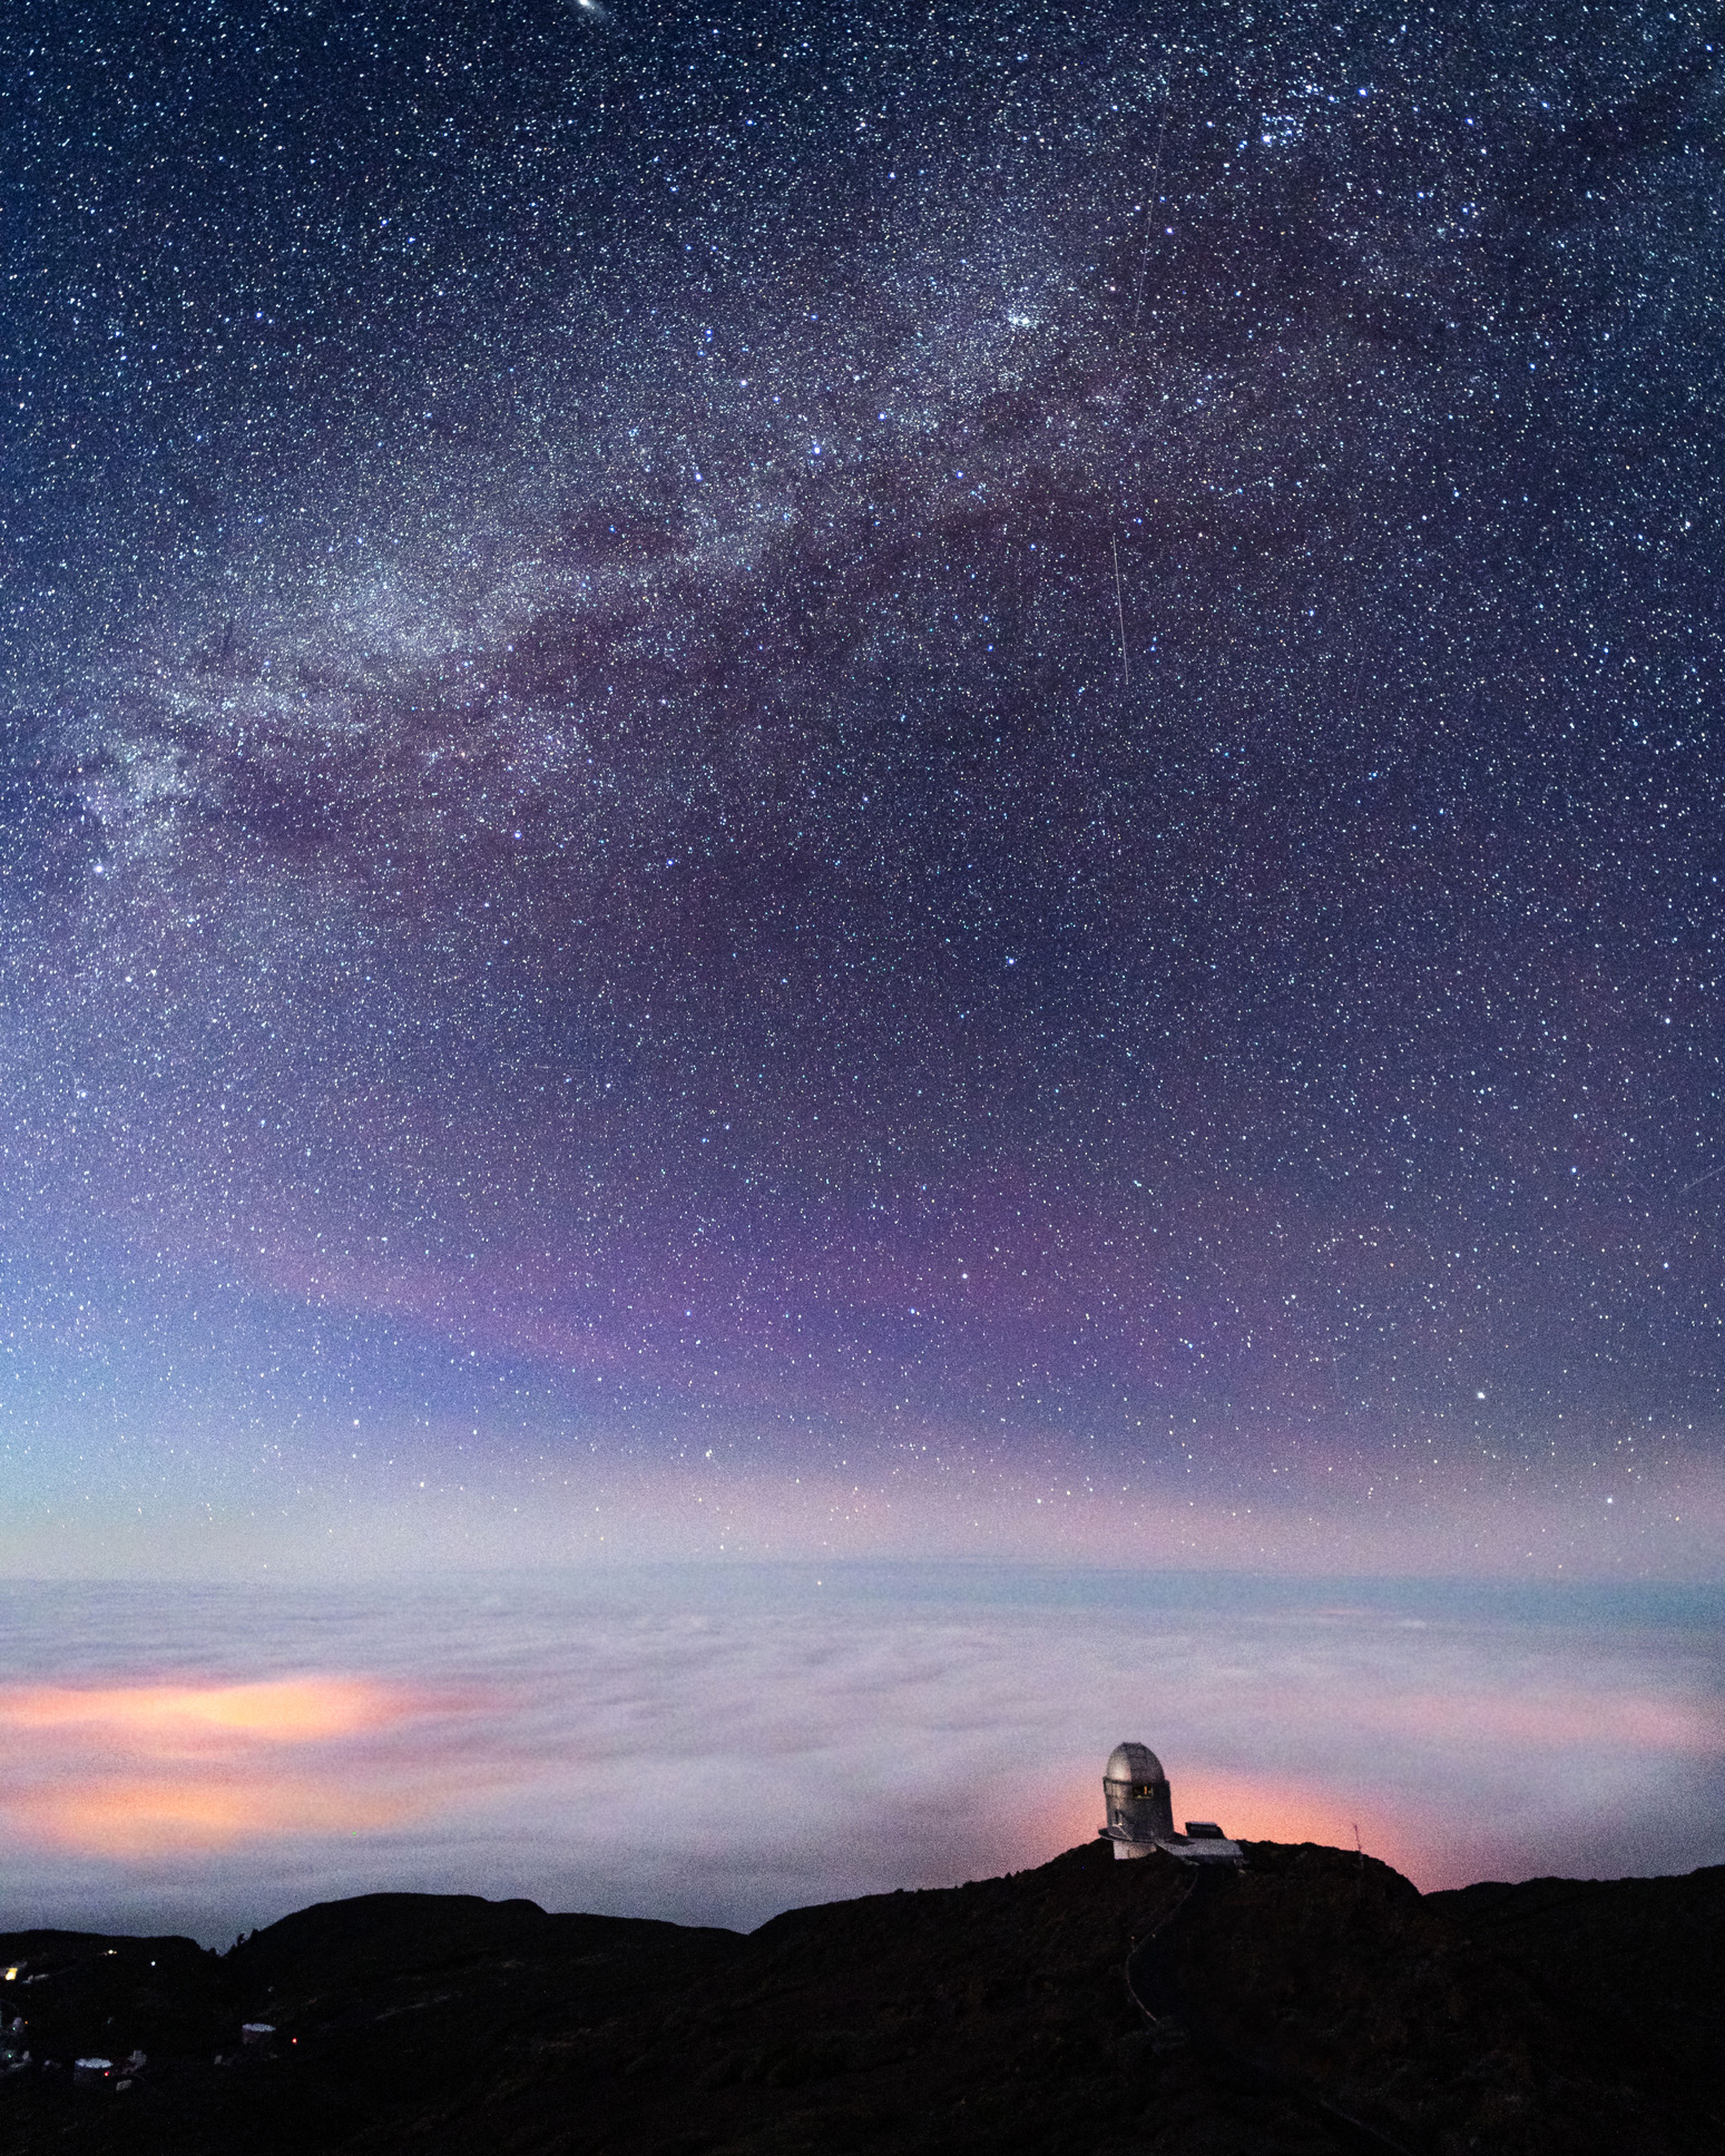 Cielo estrellado con el Observatorio de las Cañadas de fondon, Tenerife.